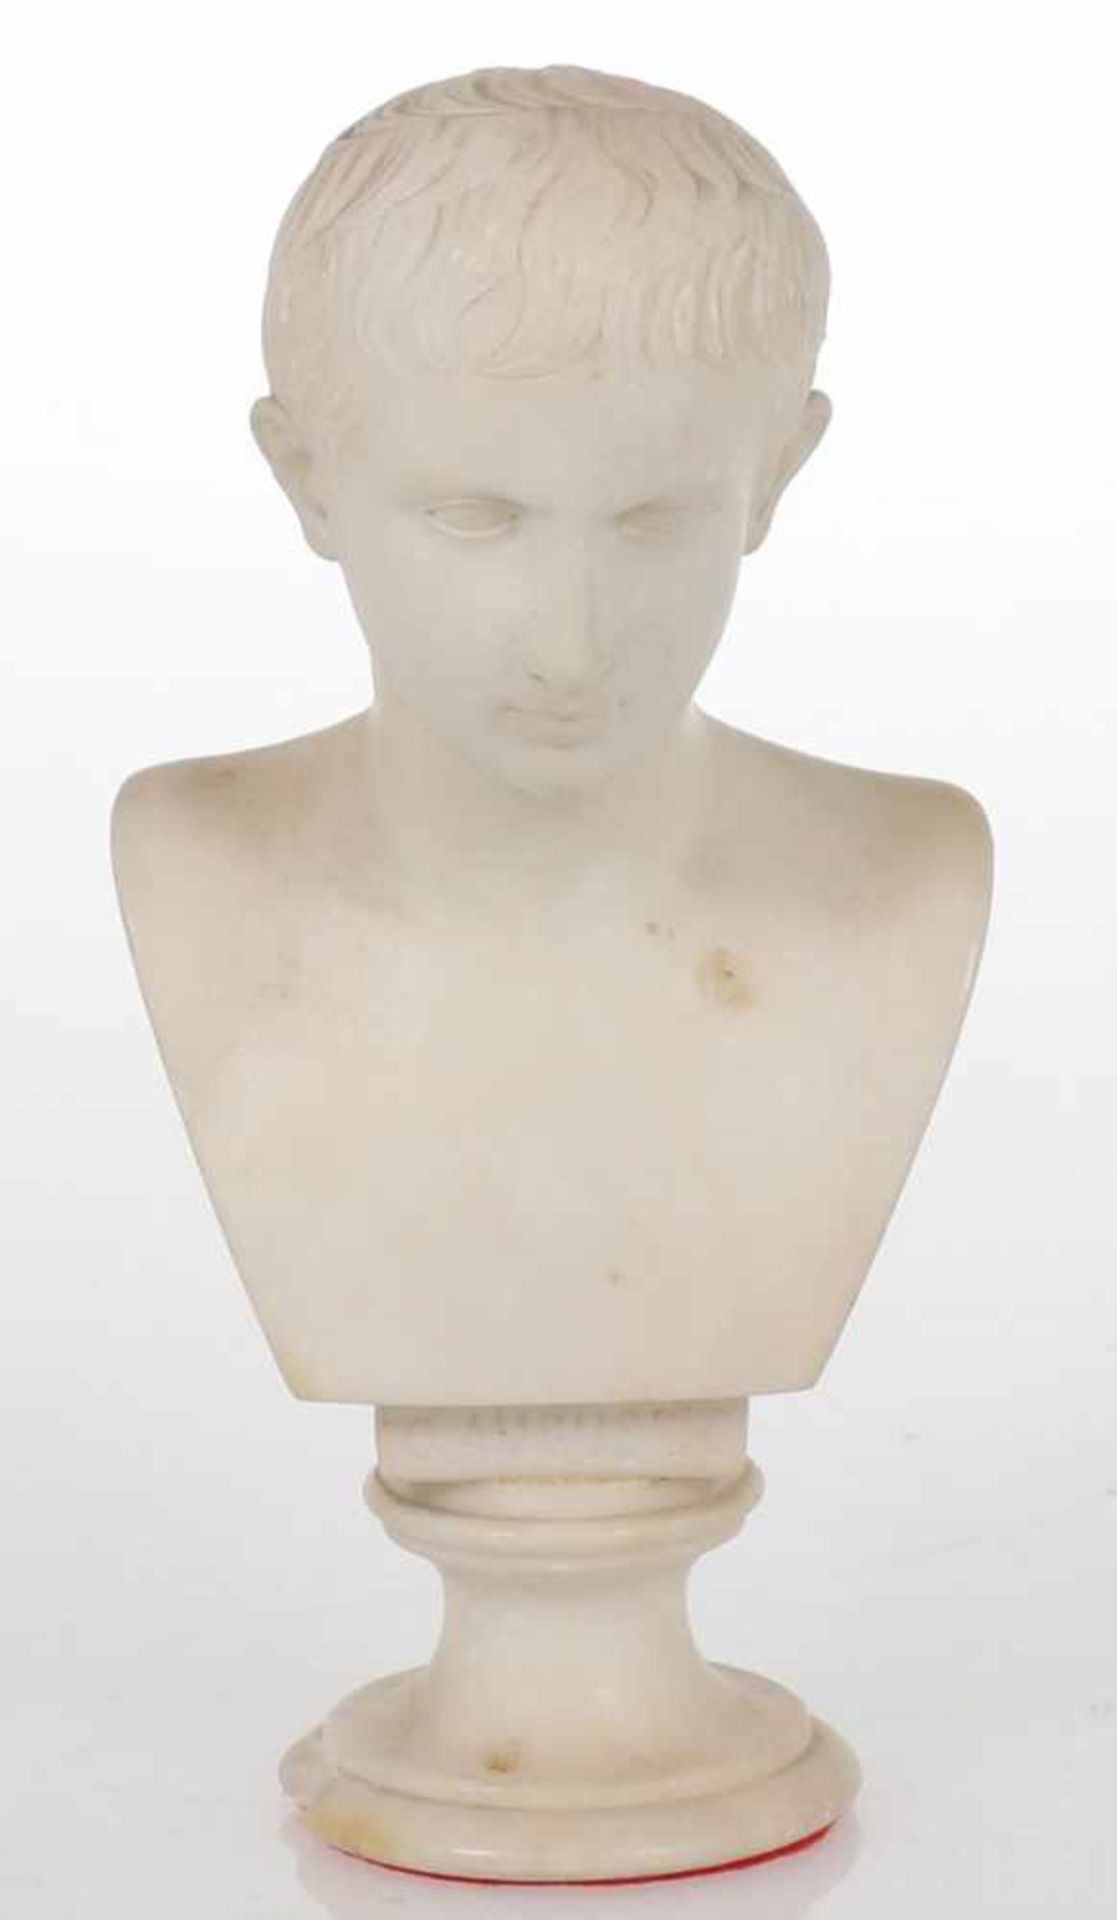 Künstler um 1900- Augustus - Alabaster. H. 21 cm. Vorderseitig bez.: C. AUGUSTO. Fehlstellen.